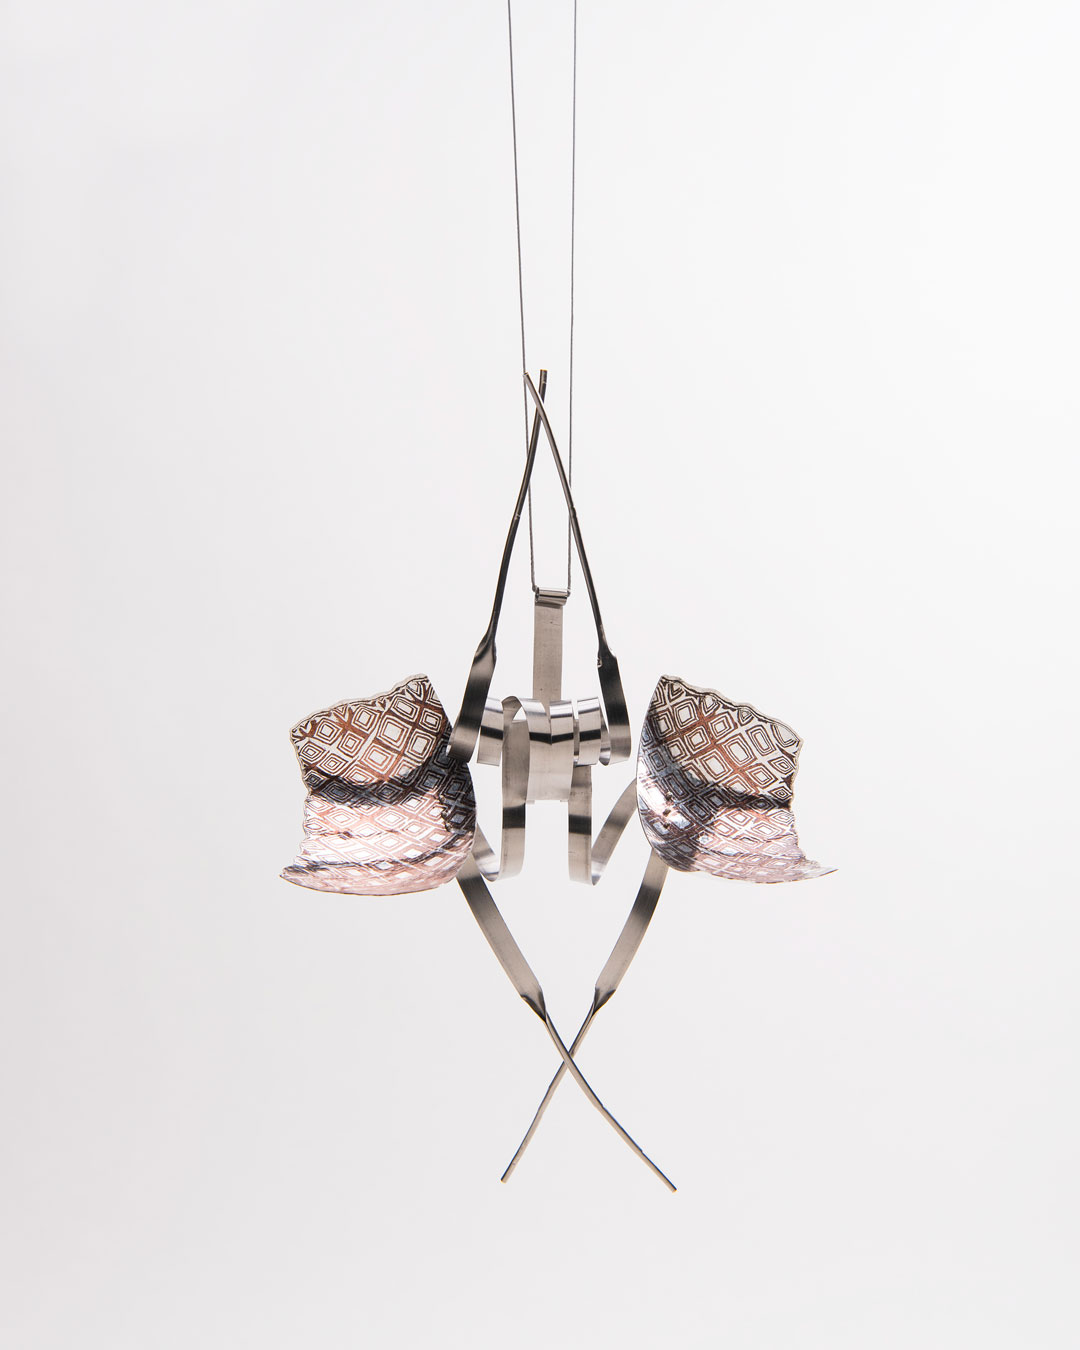 Andrea Wippermann, Mantis Religiosa, 2018, hanger; zilver, koper, roestvrij staal, gezwart zilver, 180 x 120 x 65 mm, €4600